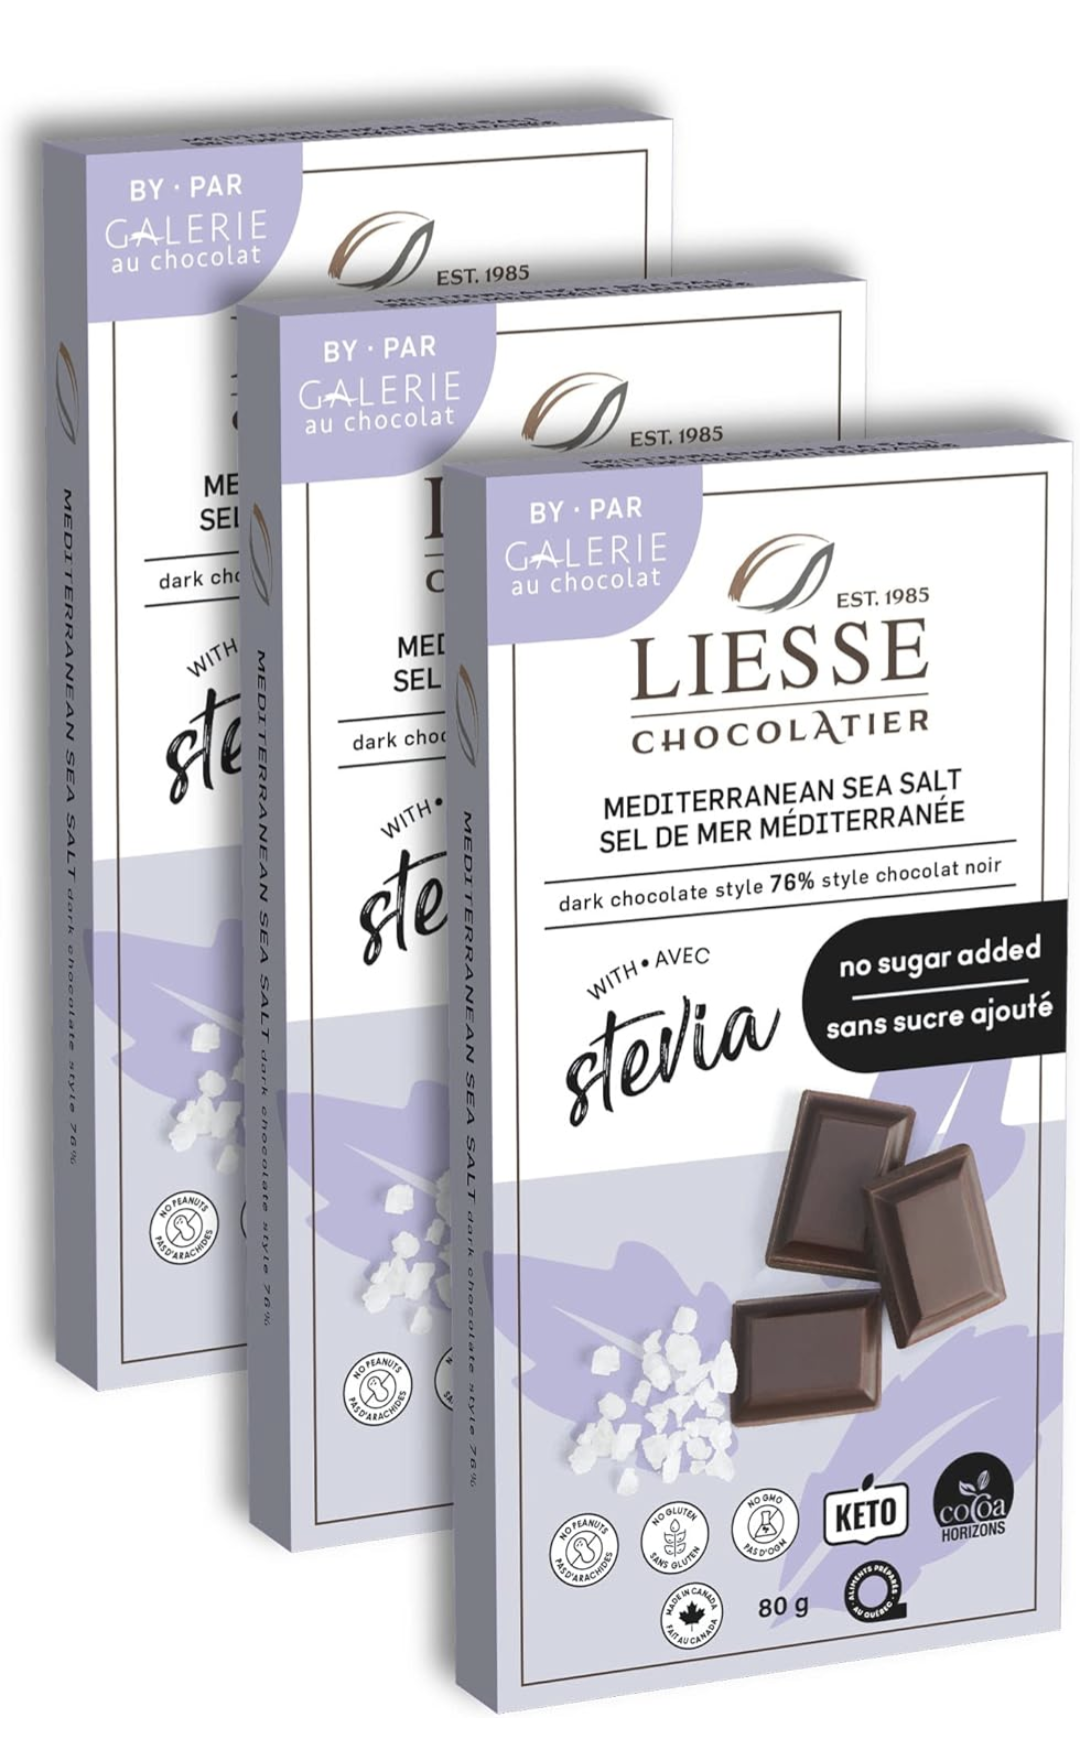 Liesse Chocolate Dark Chocolate Mediterranean Sea Salt No Sugar Chocolate Bar - 80g